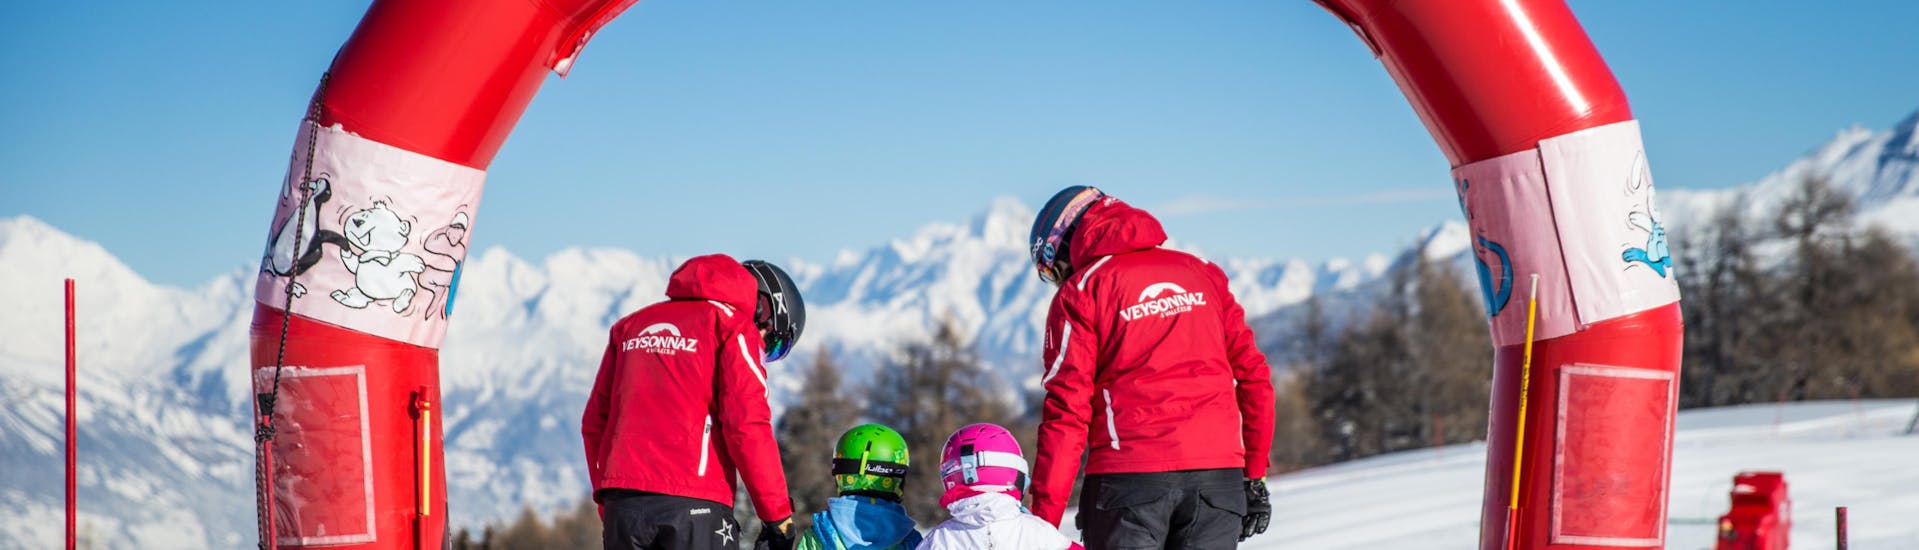 Deux moniteurs de l'ESS Veyzonnaz aident des jeunes enfants à faire leurs premiers pas à ski lors d'un cours particulier de ski pour enfants de 2 ans et demi à 5 ans.